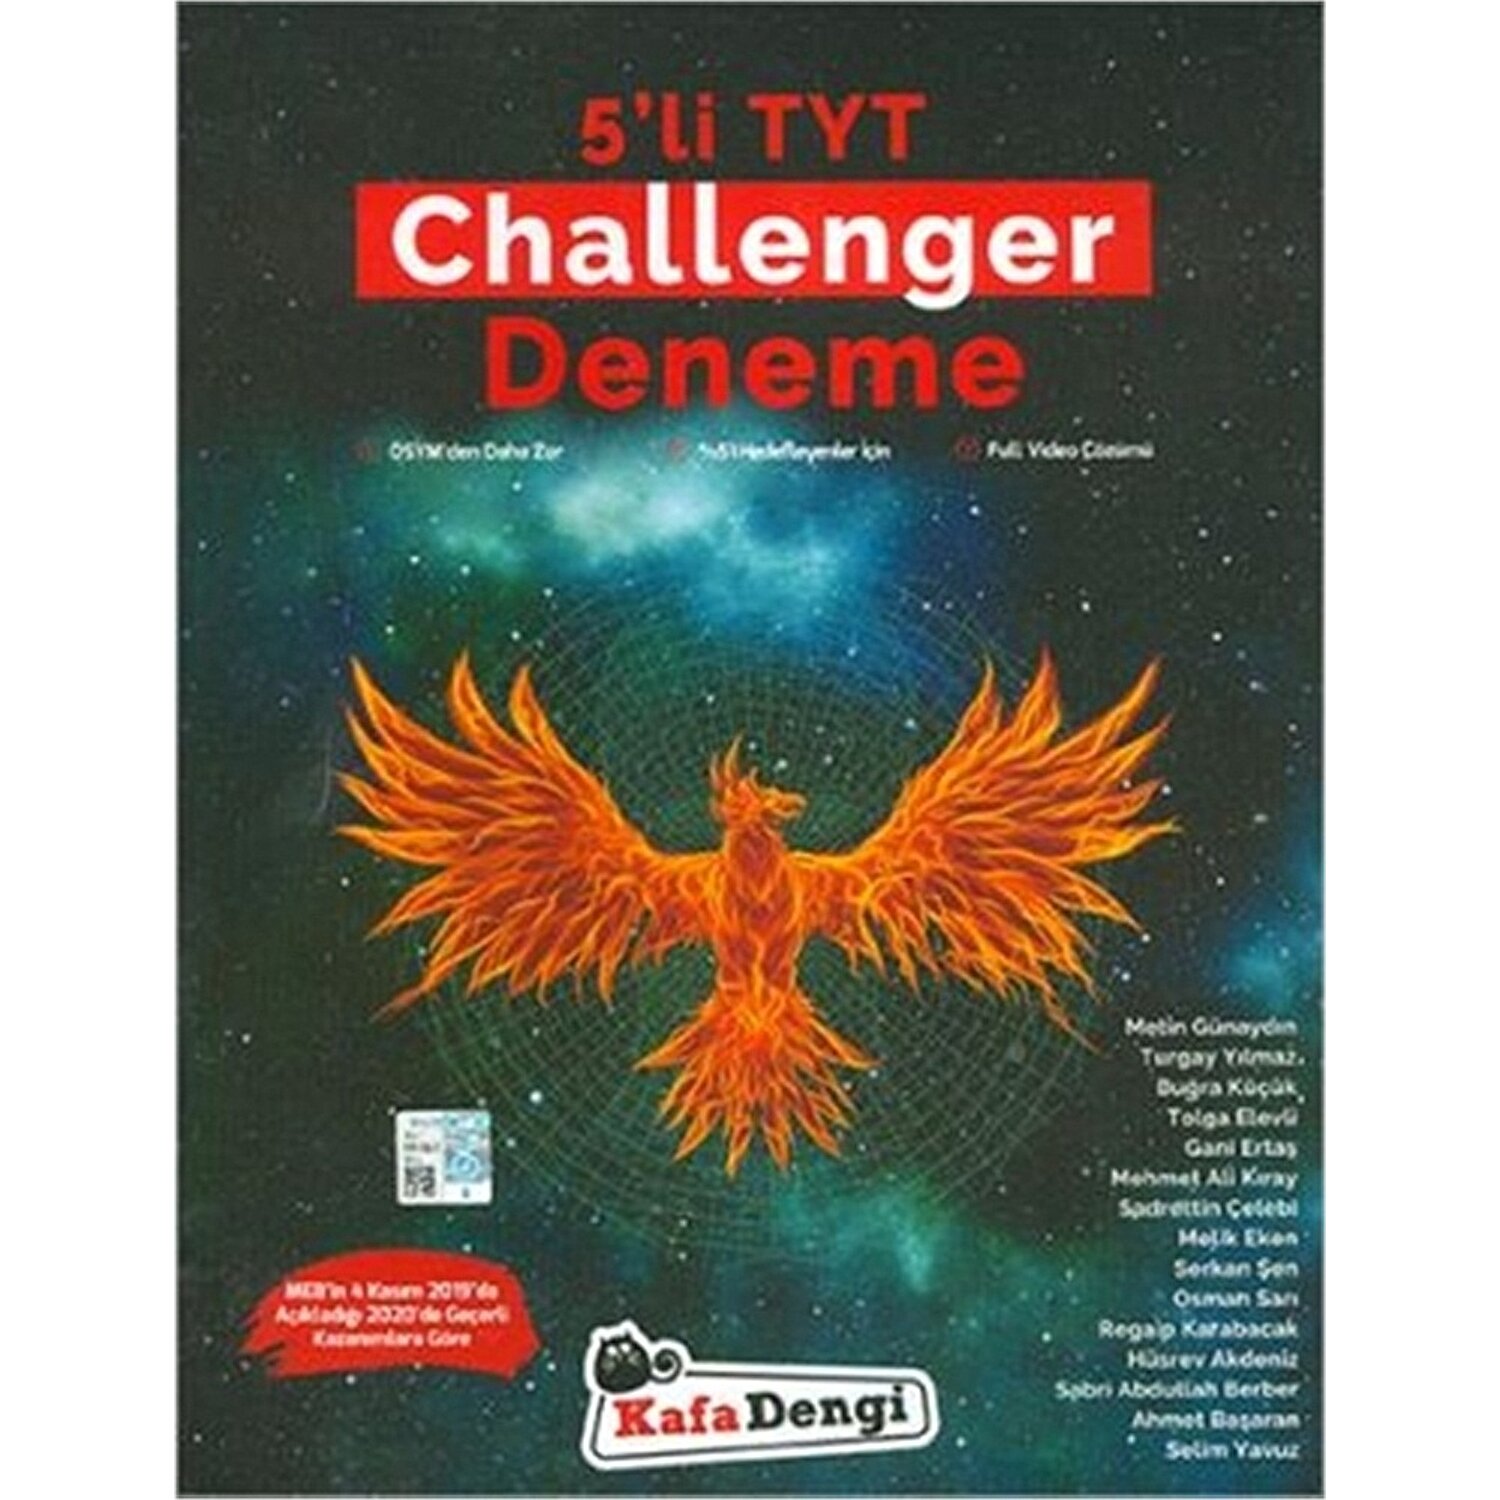 Kafa Dengi Yayinlari Tyt 5 Li Challenger Deneme Kitabi Ve Fiyati